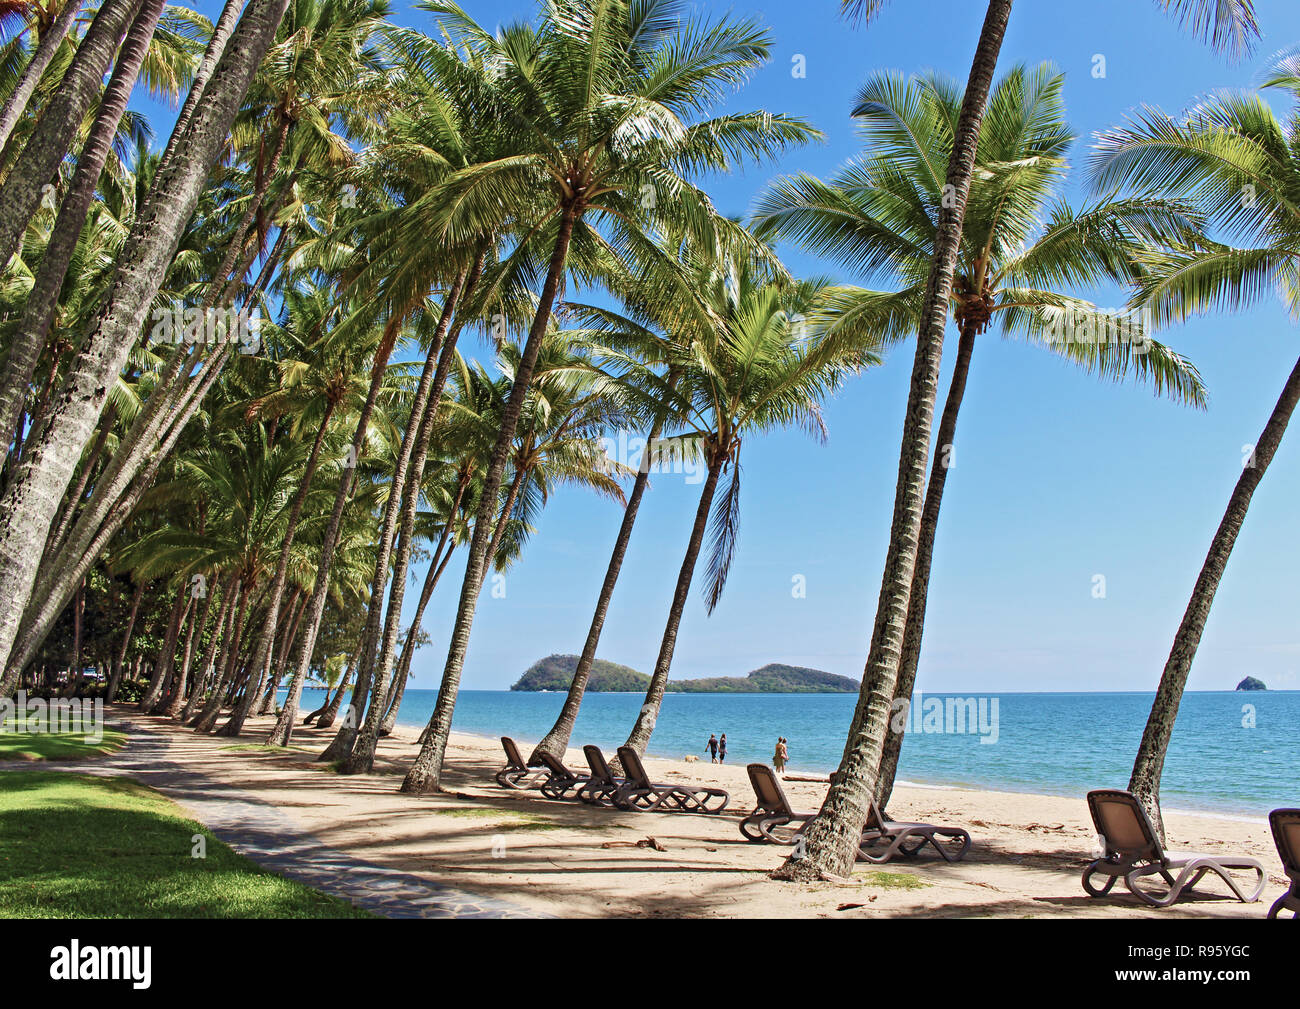 Die schönsten Palmen gesäumten Sandstrand, unberührte und unbevölkerten Strand in Cairns... genießen Sie Palm Cove Beach in Far North Queensland Australien Stockfoto